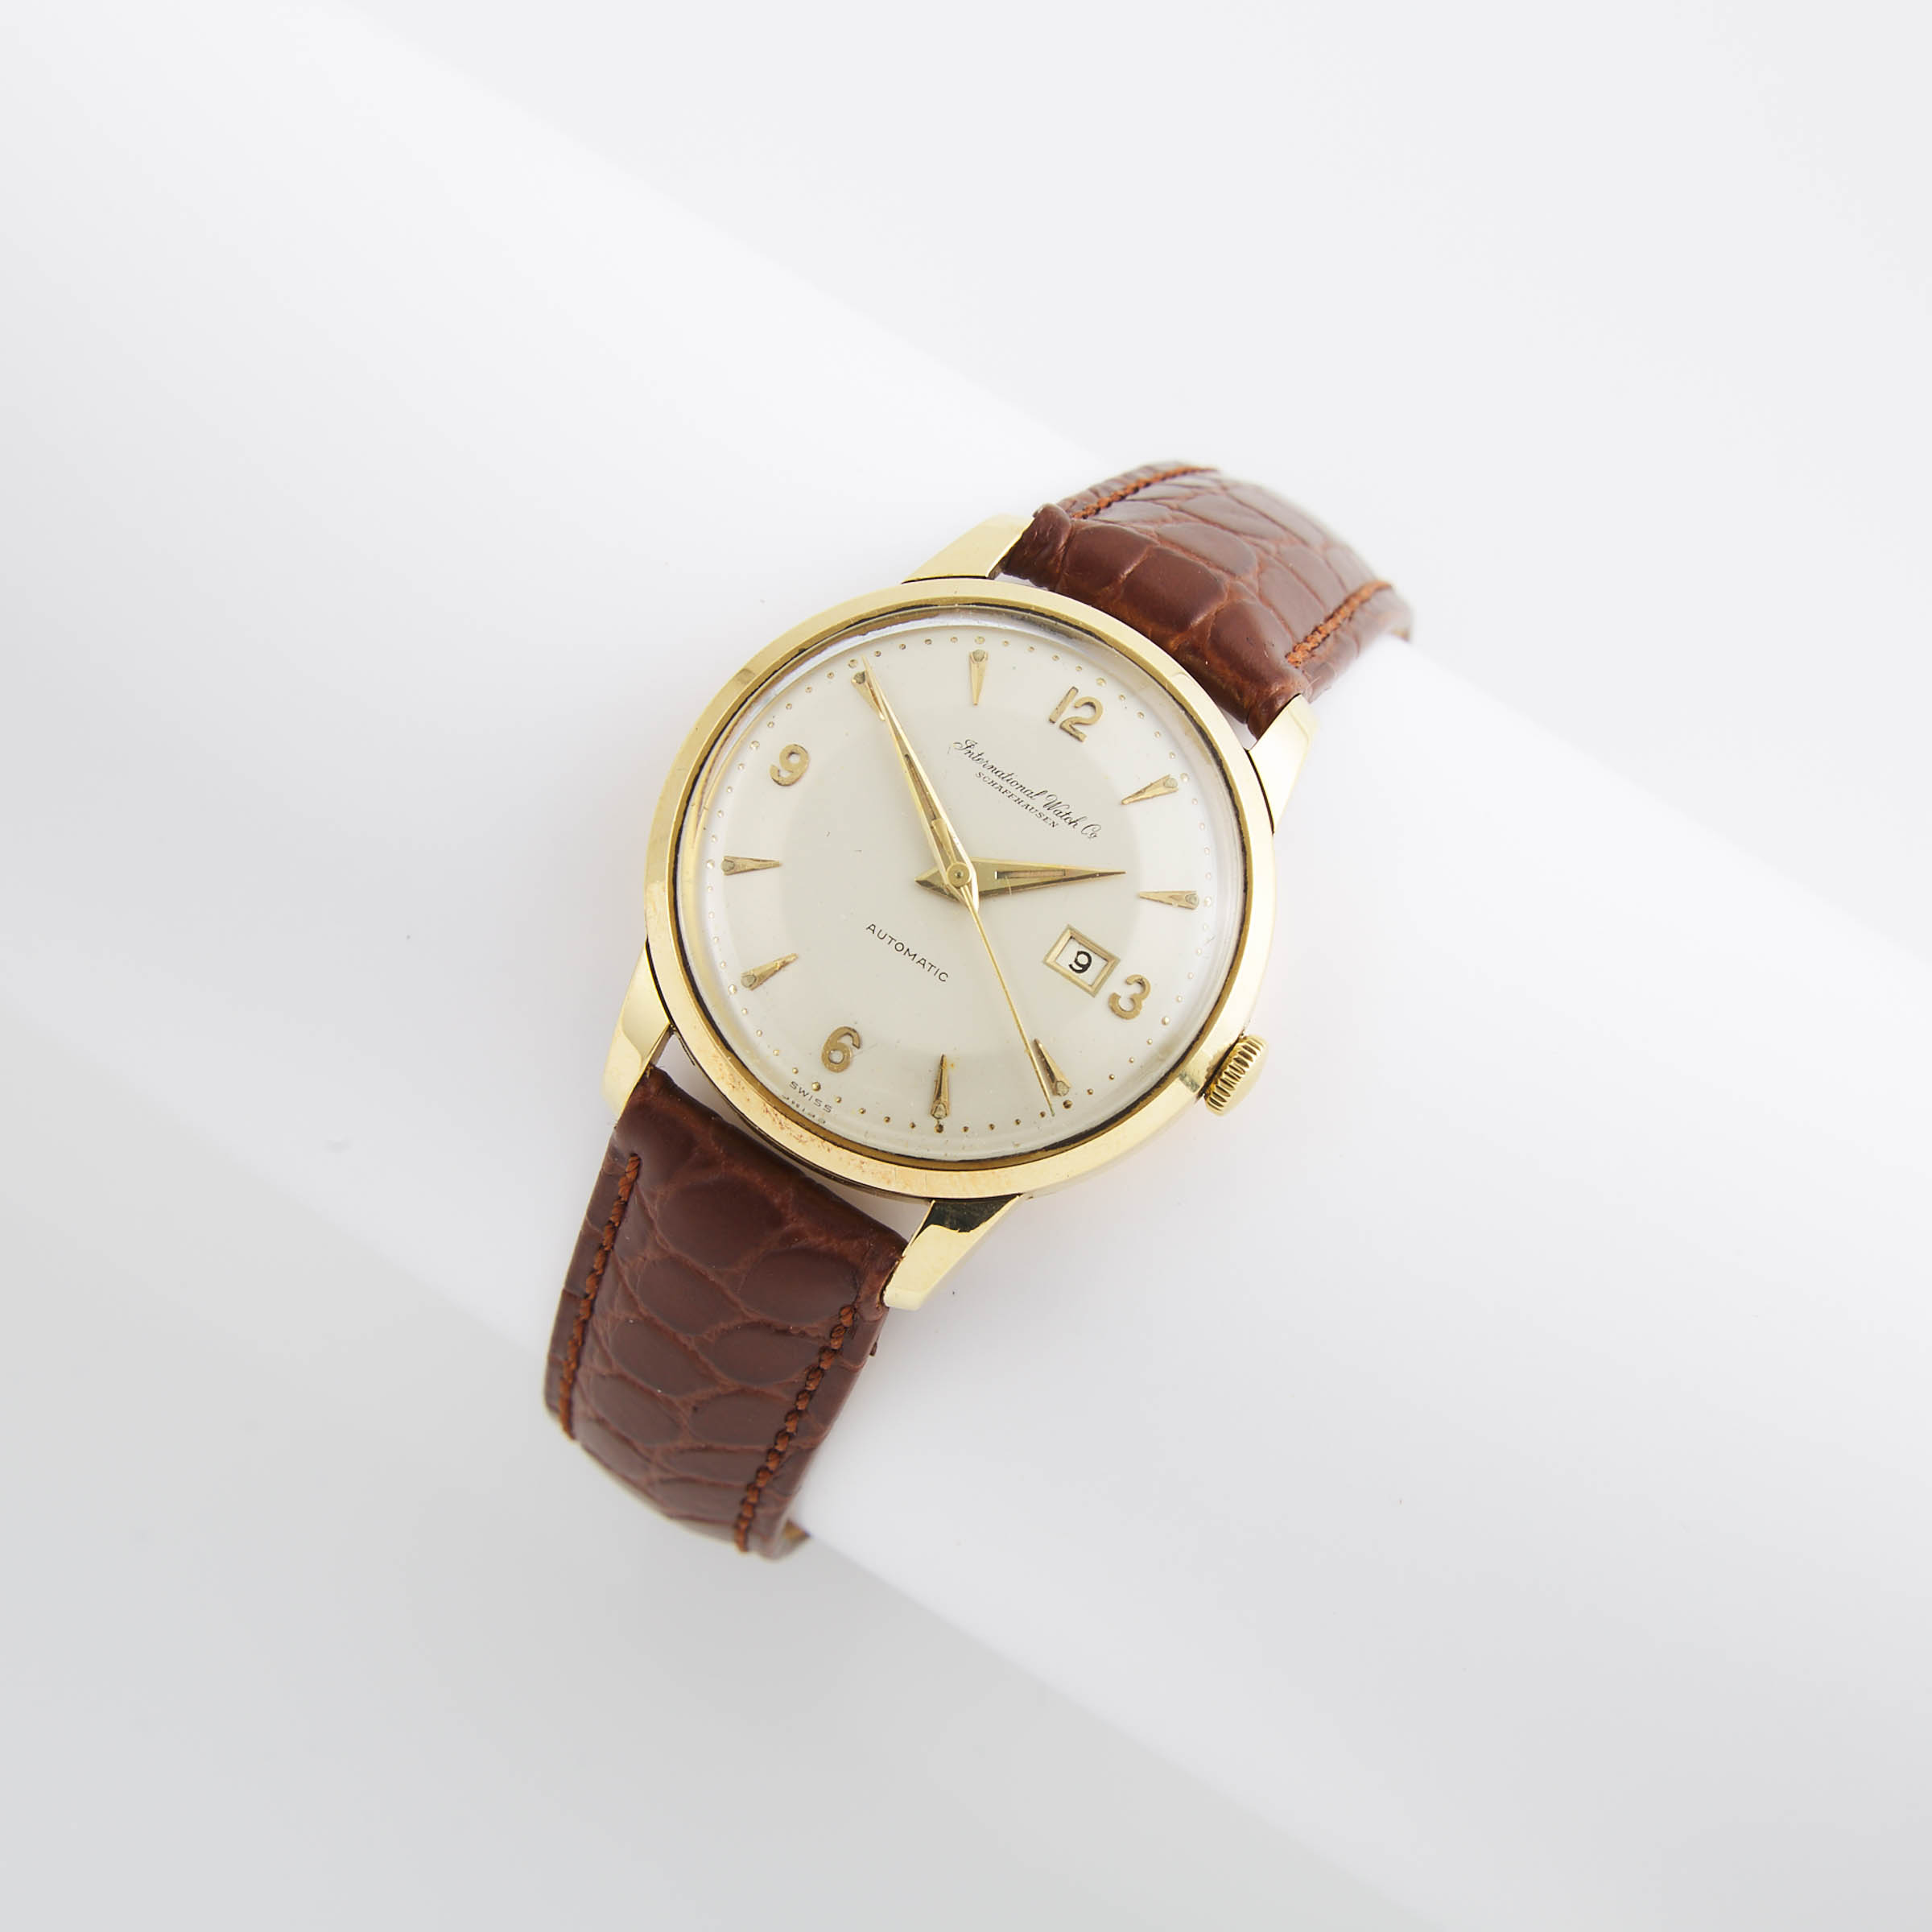 International Watch Co - Schaffhausen Wristwatch, With Date